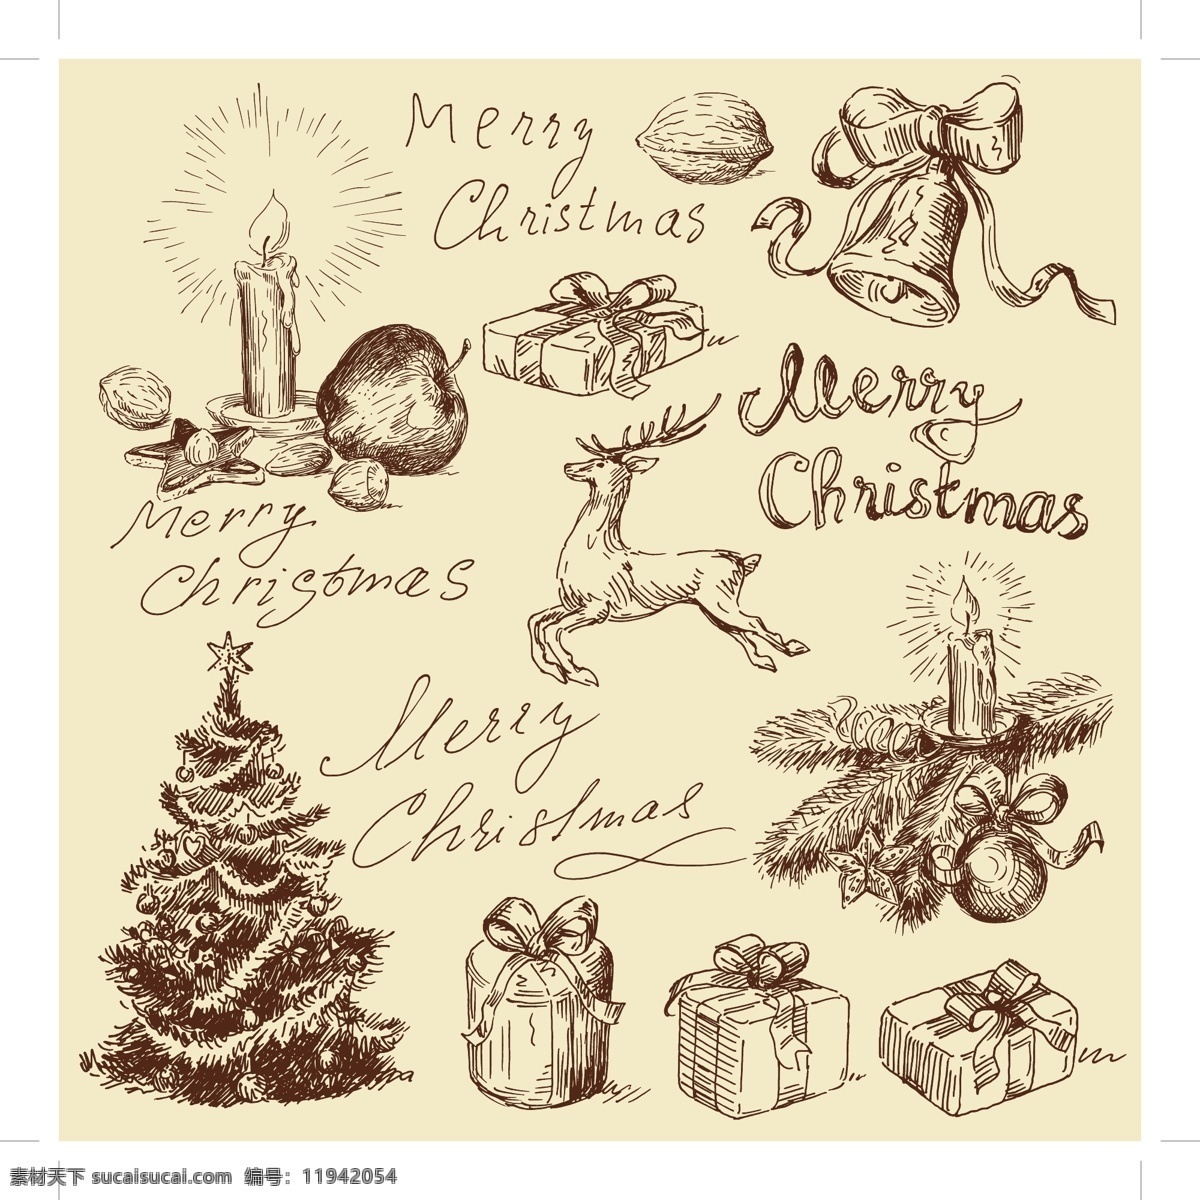 复古 圣诞节 矢量图 铃铛 圣诞 蜡烛 麋鹿 礼物 雪人 星星 木屋 节日素材 其他节日